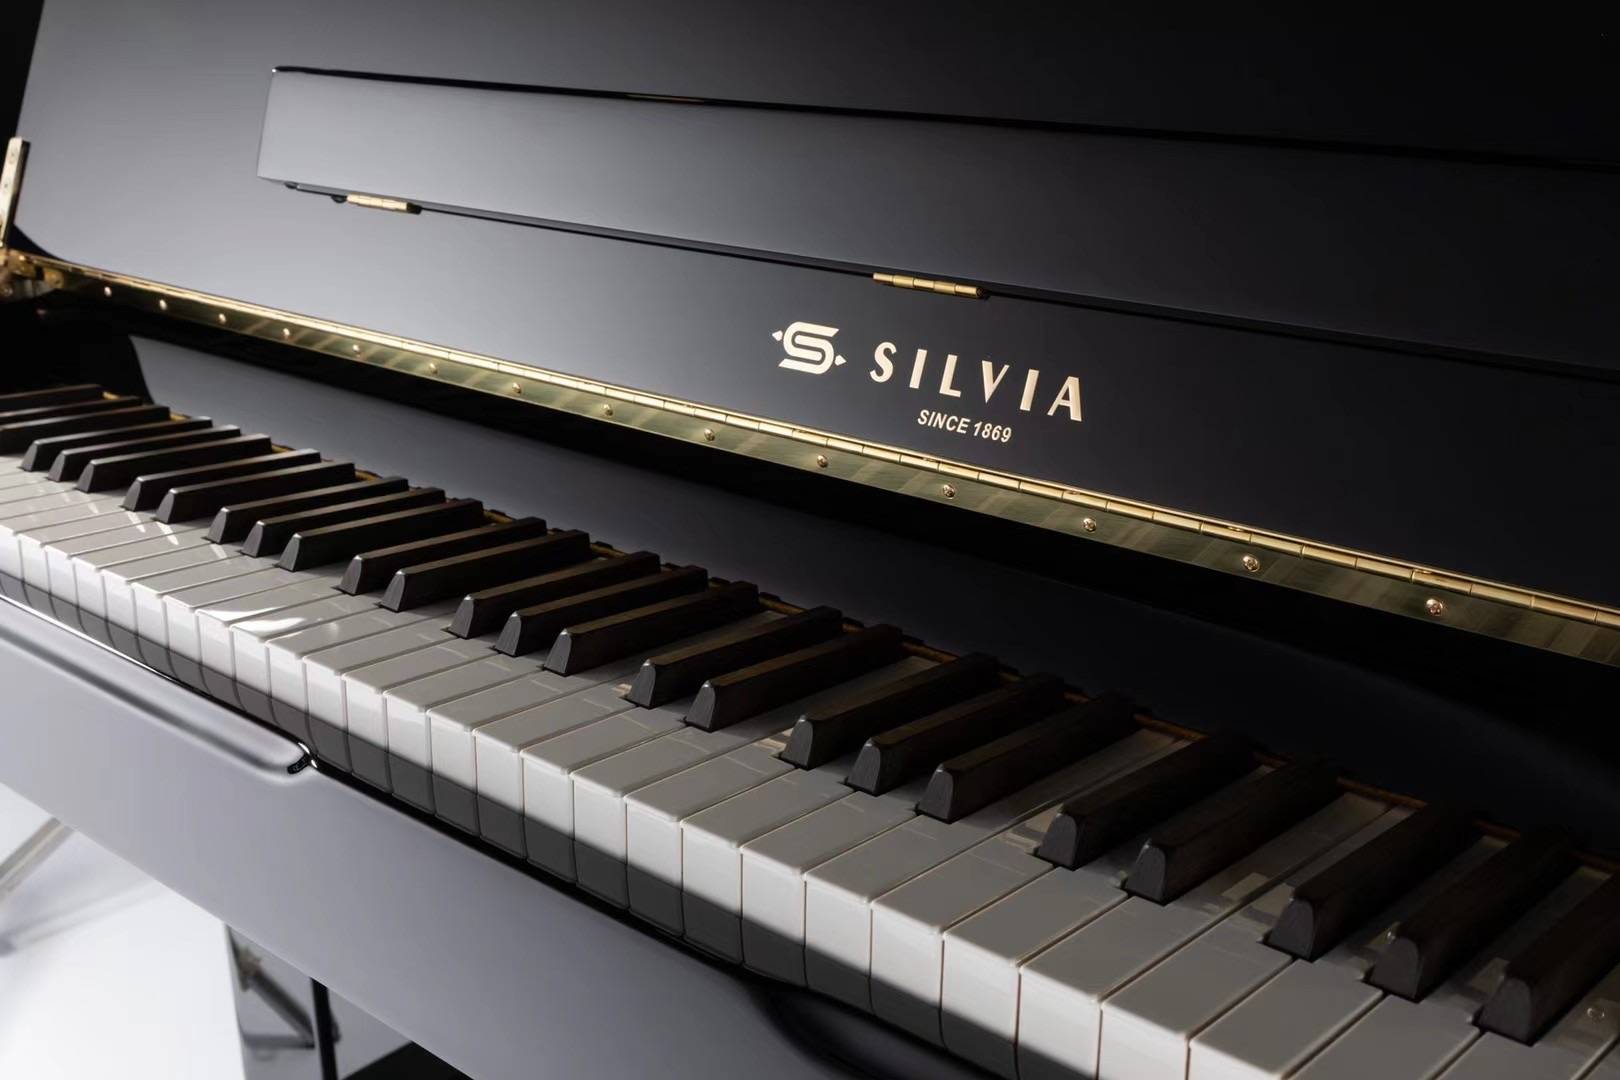 西尔维娅钢琴不忘初心打造一流品质